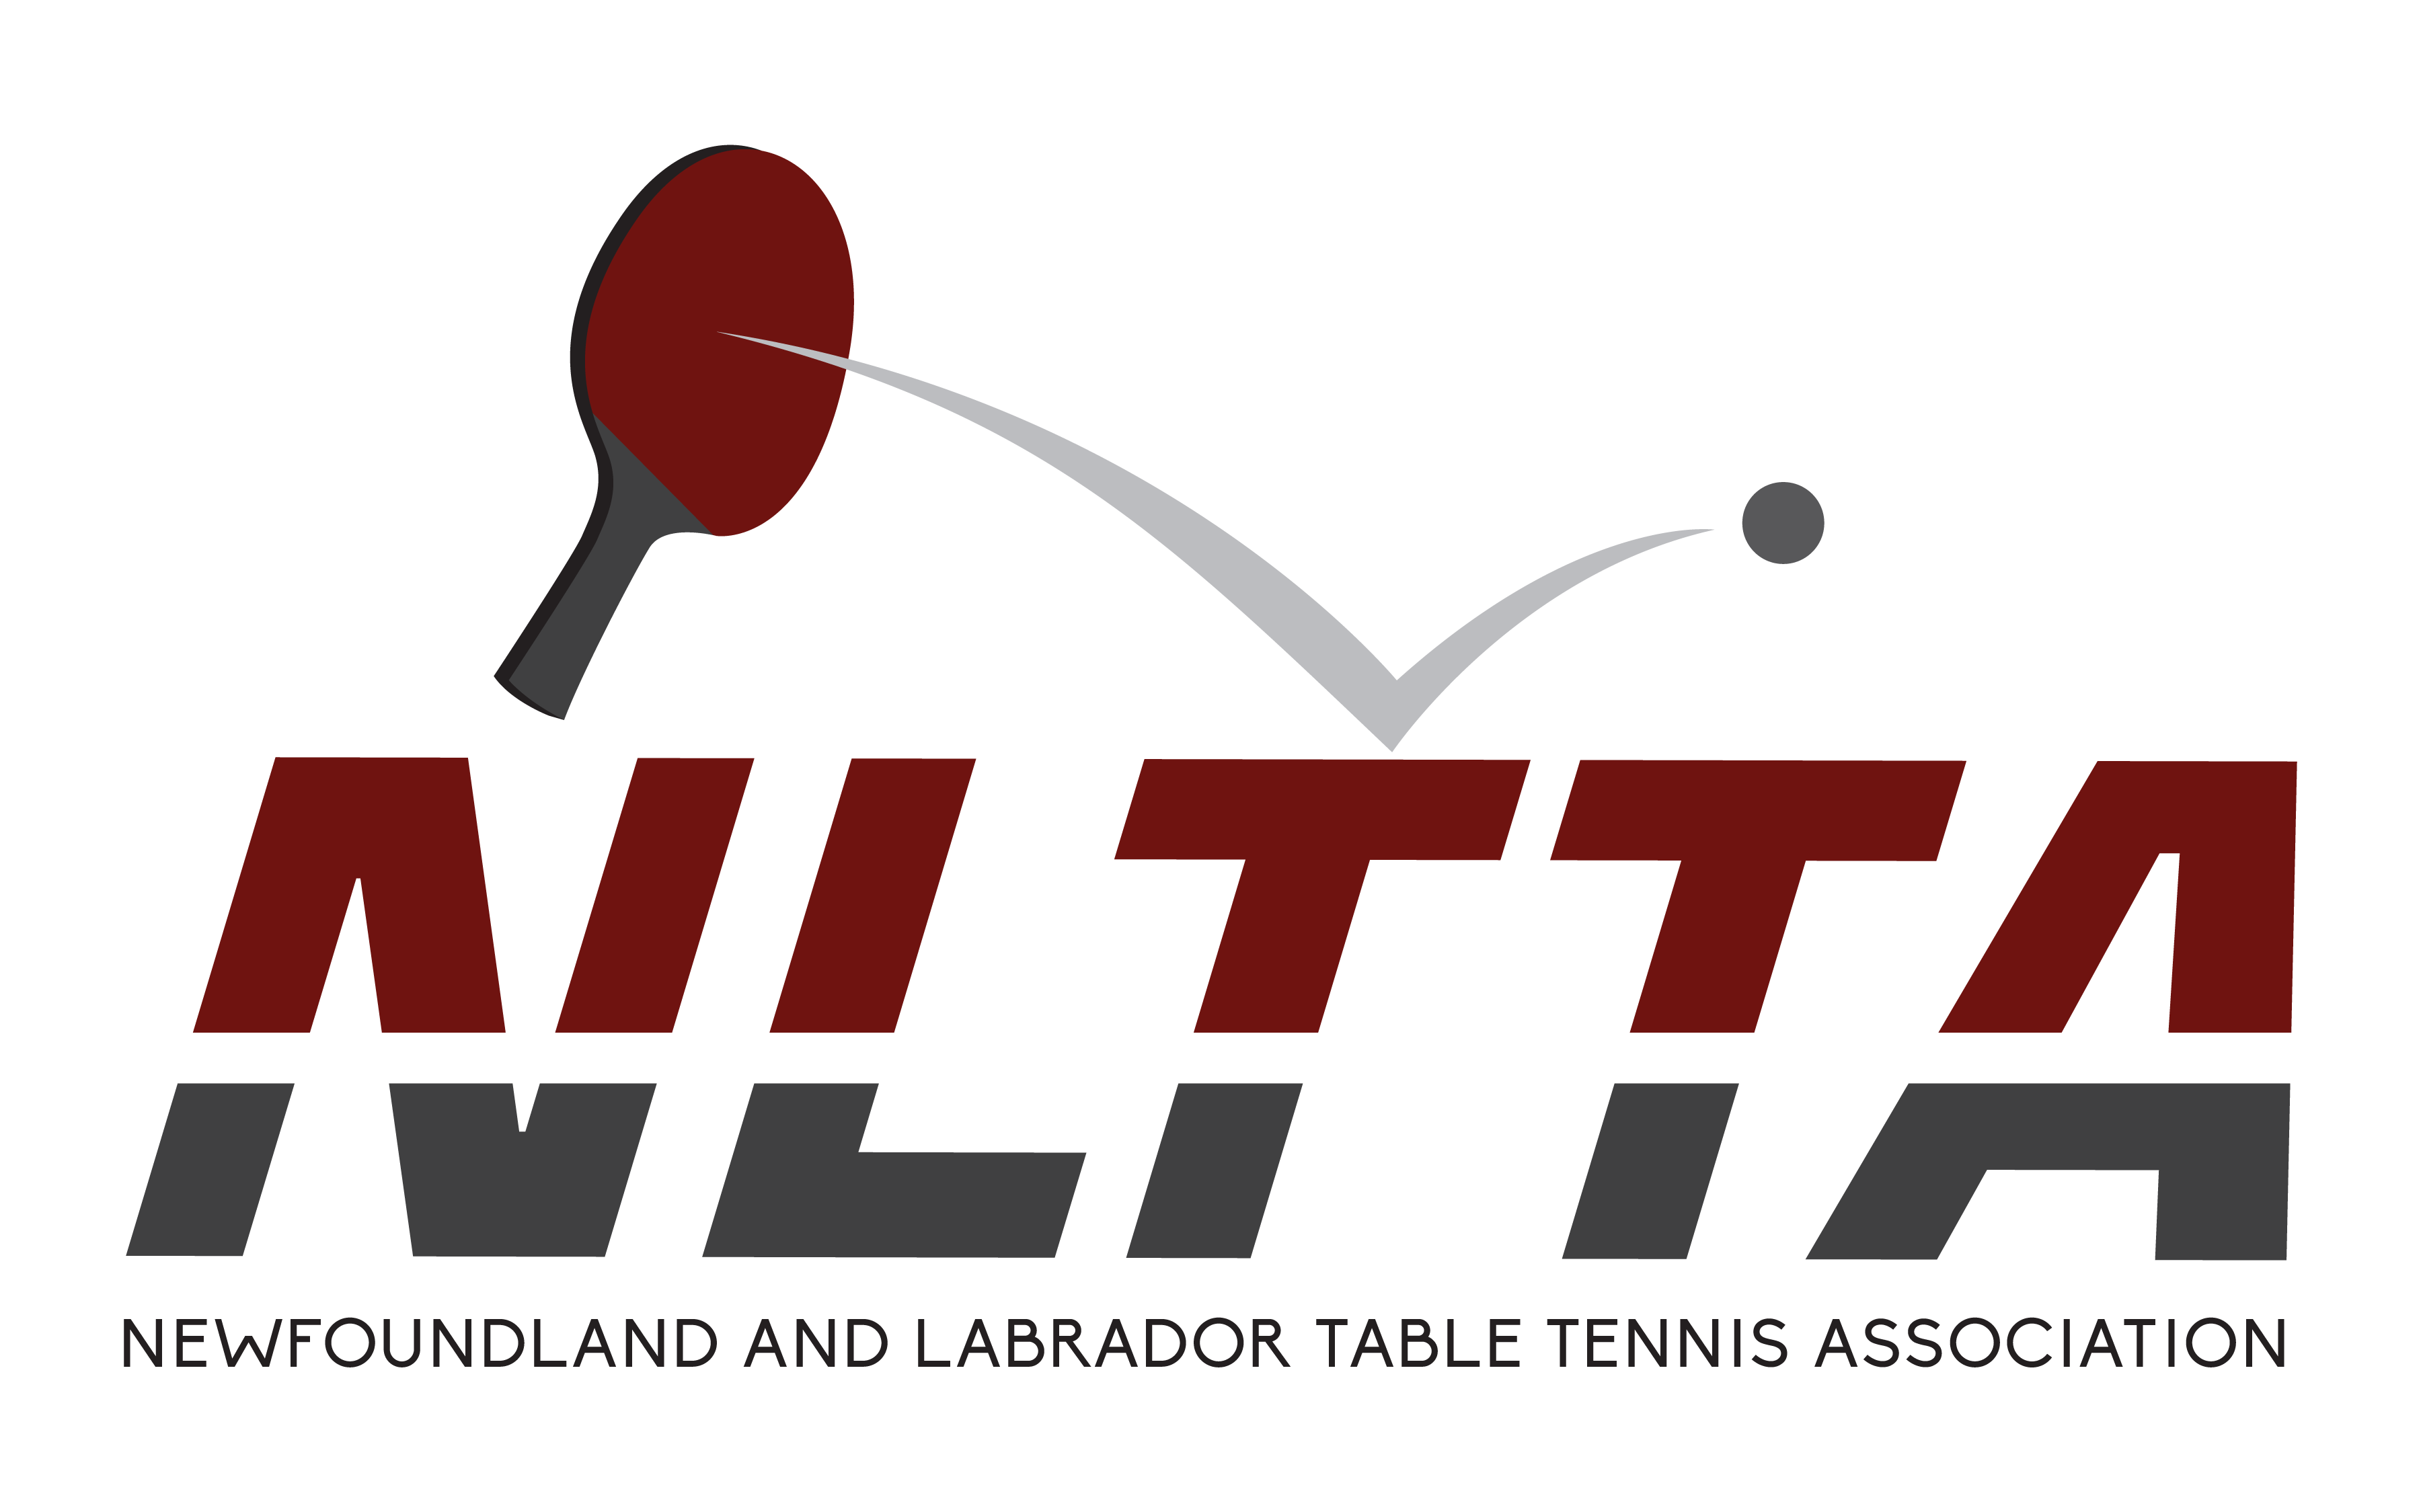 NLTTA CBN Open Table Tennis